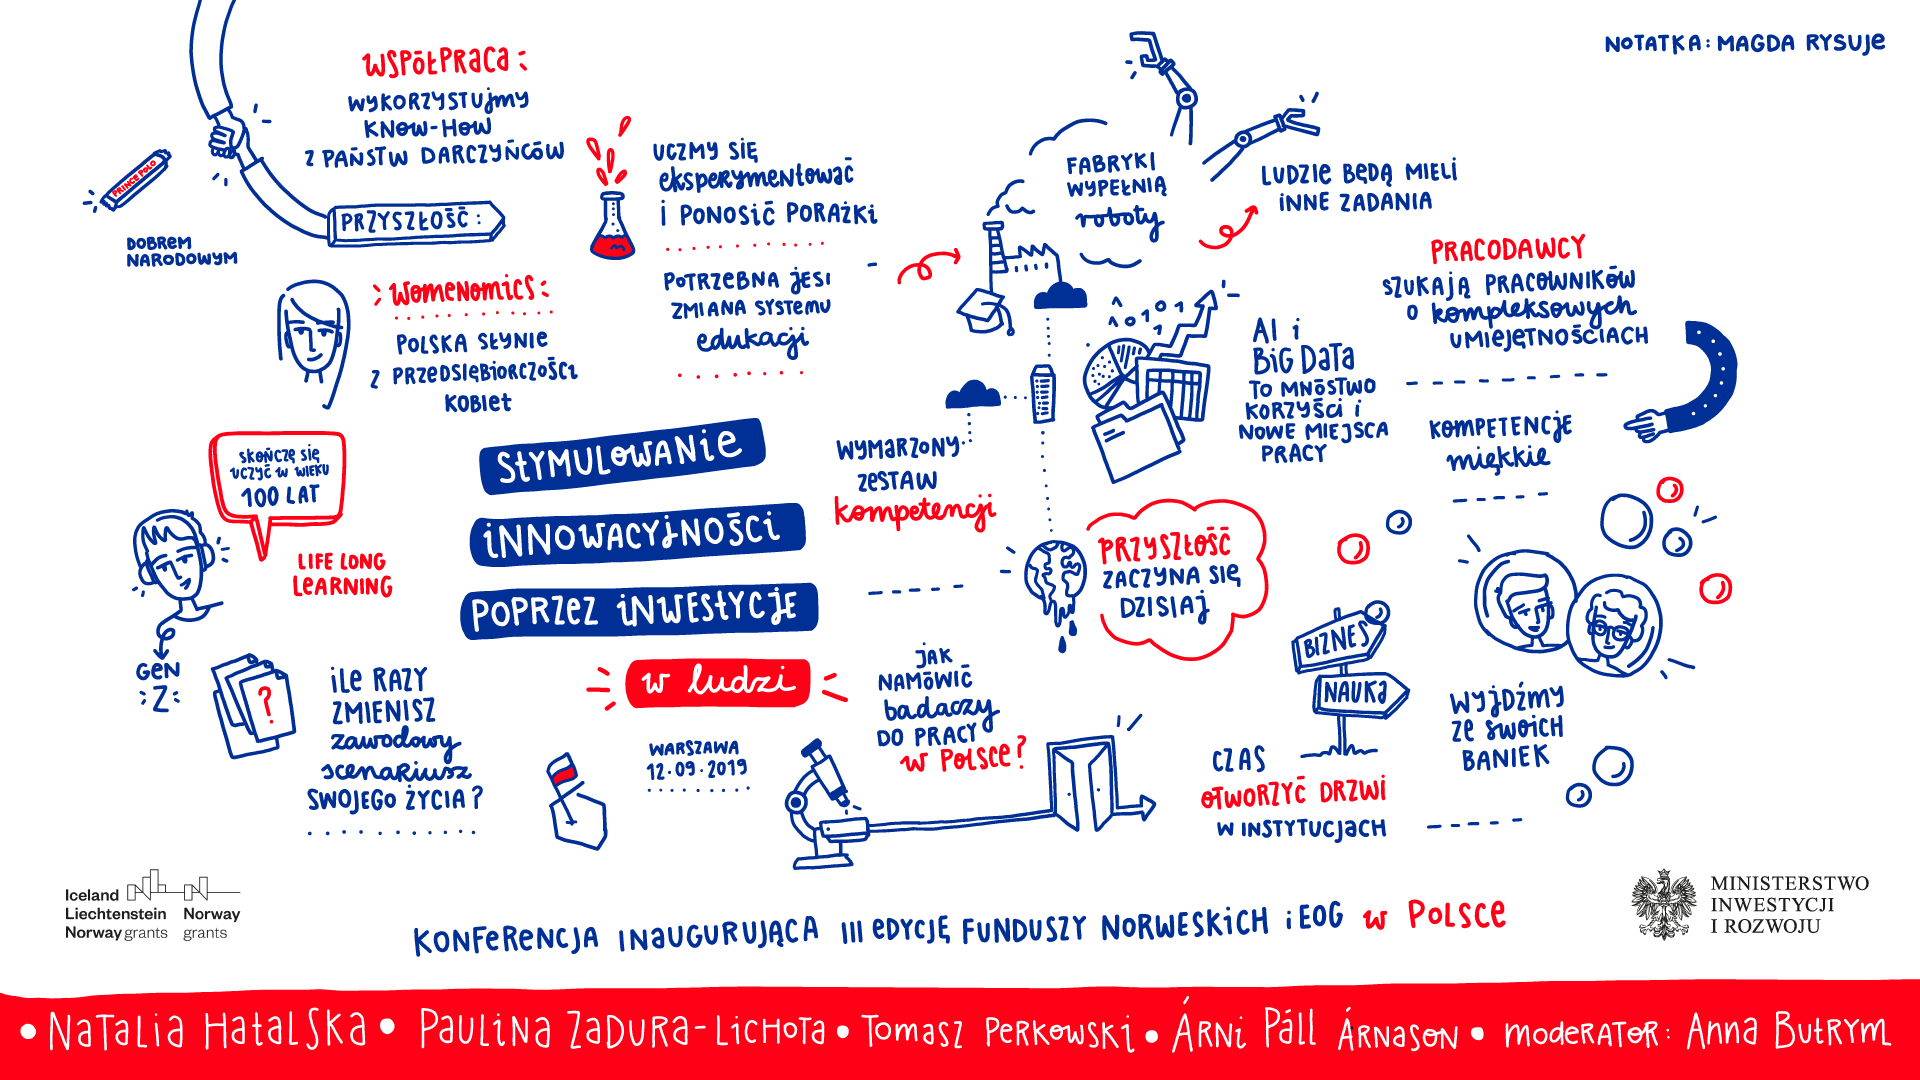 Graficzny zapis kluczowych wątków panelu dyskusyjnego "Stymulowanie innowacyjności poprzez inwestycje w ludzi"